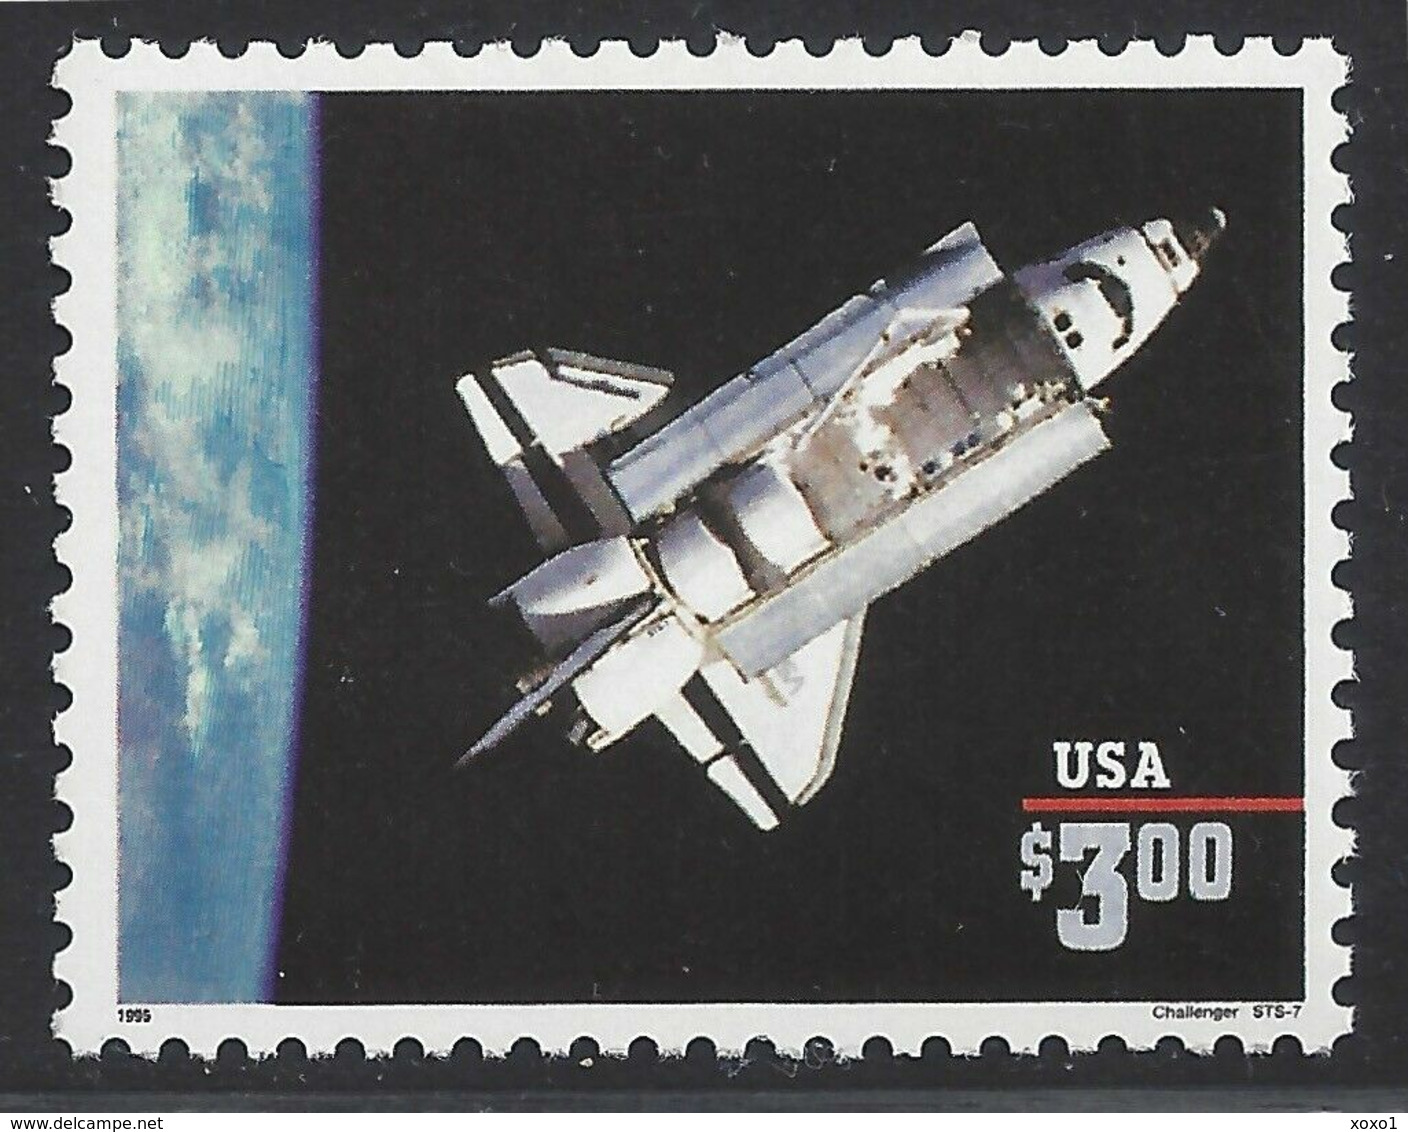 USA 1995 MiNr. 2581 I  CHALLENGER SPACE SHUTTLE 1v  MNH**  7.50 € - Verenigde Staten